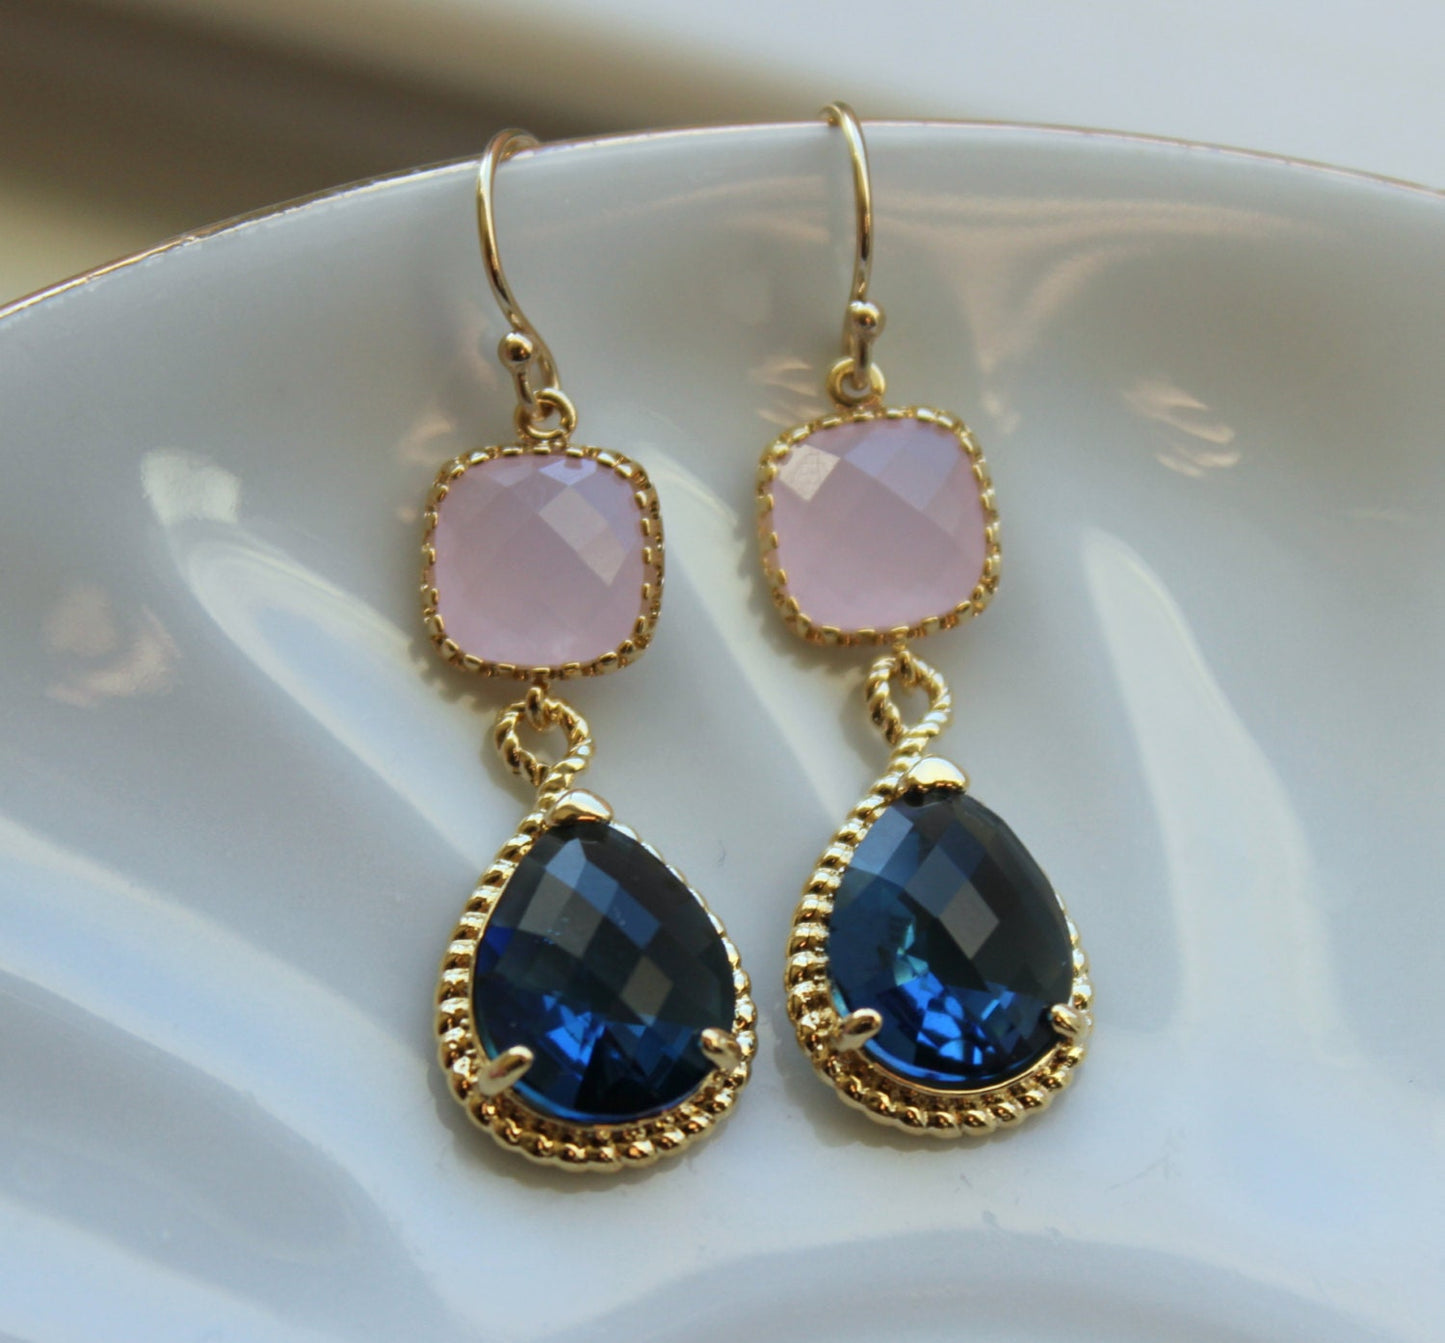 Sapphire Blue Pink Opal Earrings Gold Blush Pink Navy Earrings Teardrop Glass 14k Gold Filled Earwires - Bridesmaid Earrings Wedding Jewelry